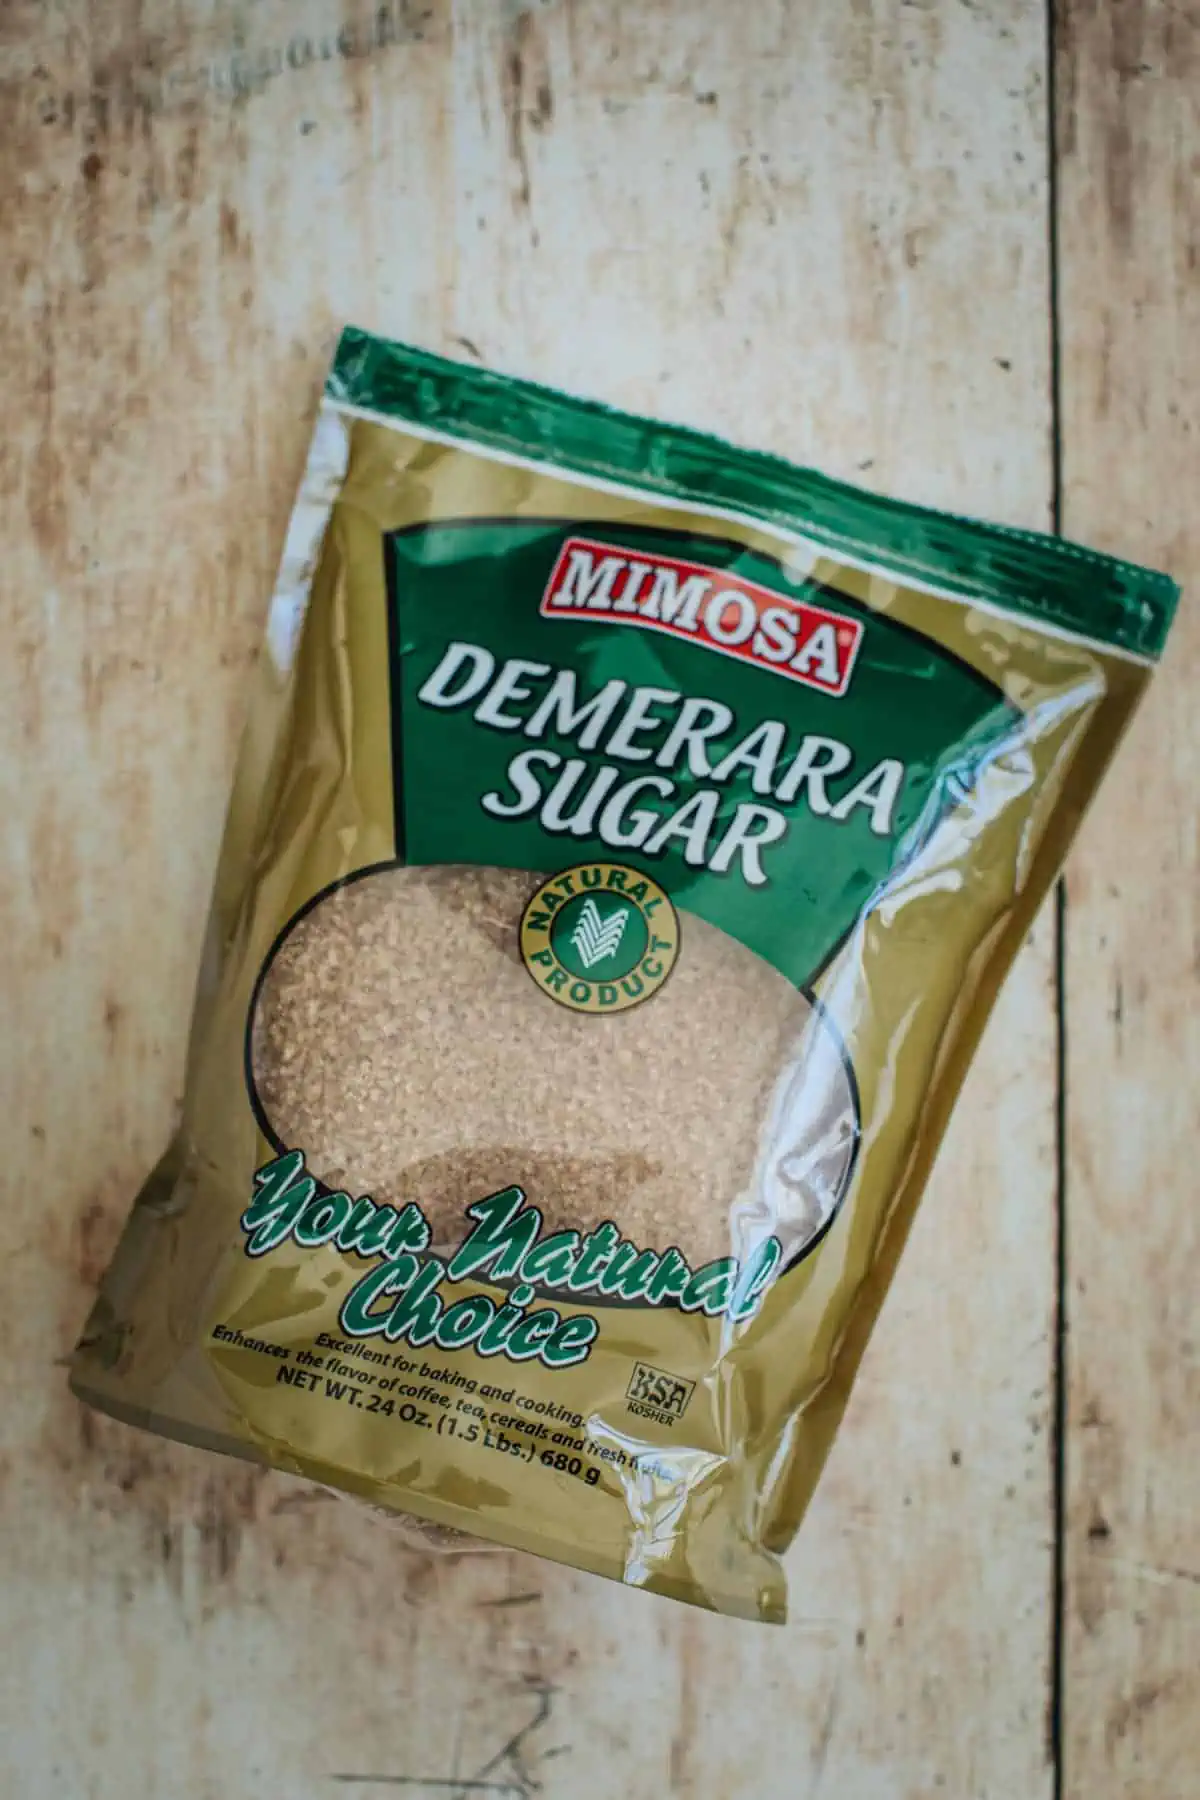 Bag of demerara sugar.